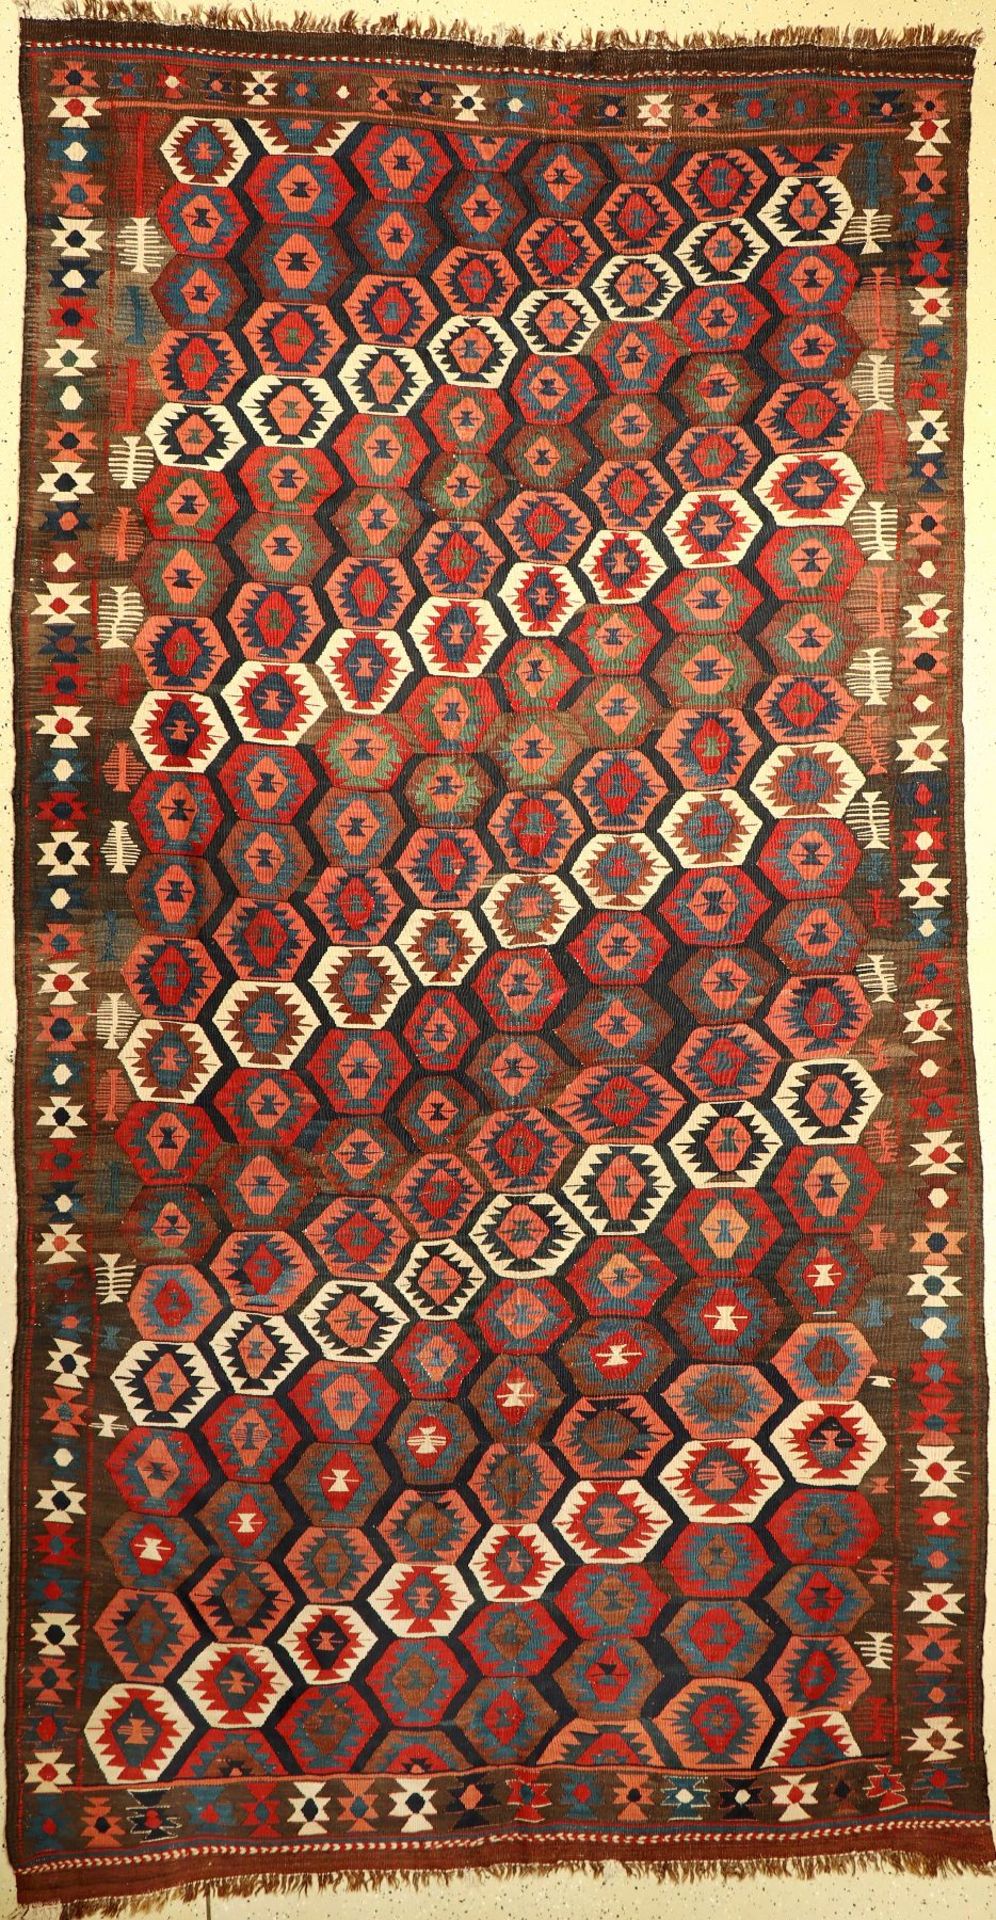 Veramin, Persien, um 1920, Wolle auf Wolle,EHZ: 2, Kelim, ca. 355 x 180 cmVeramin Kilim, Persia,